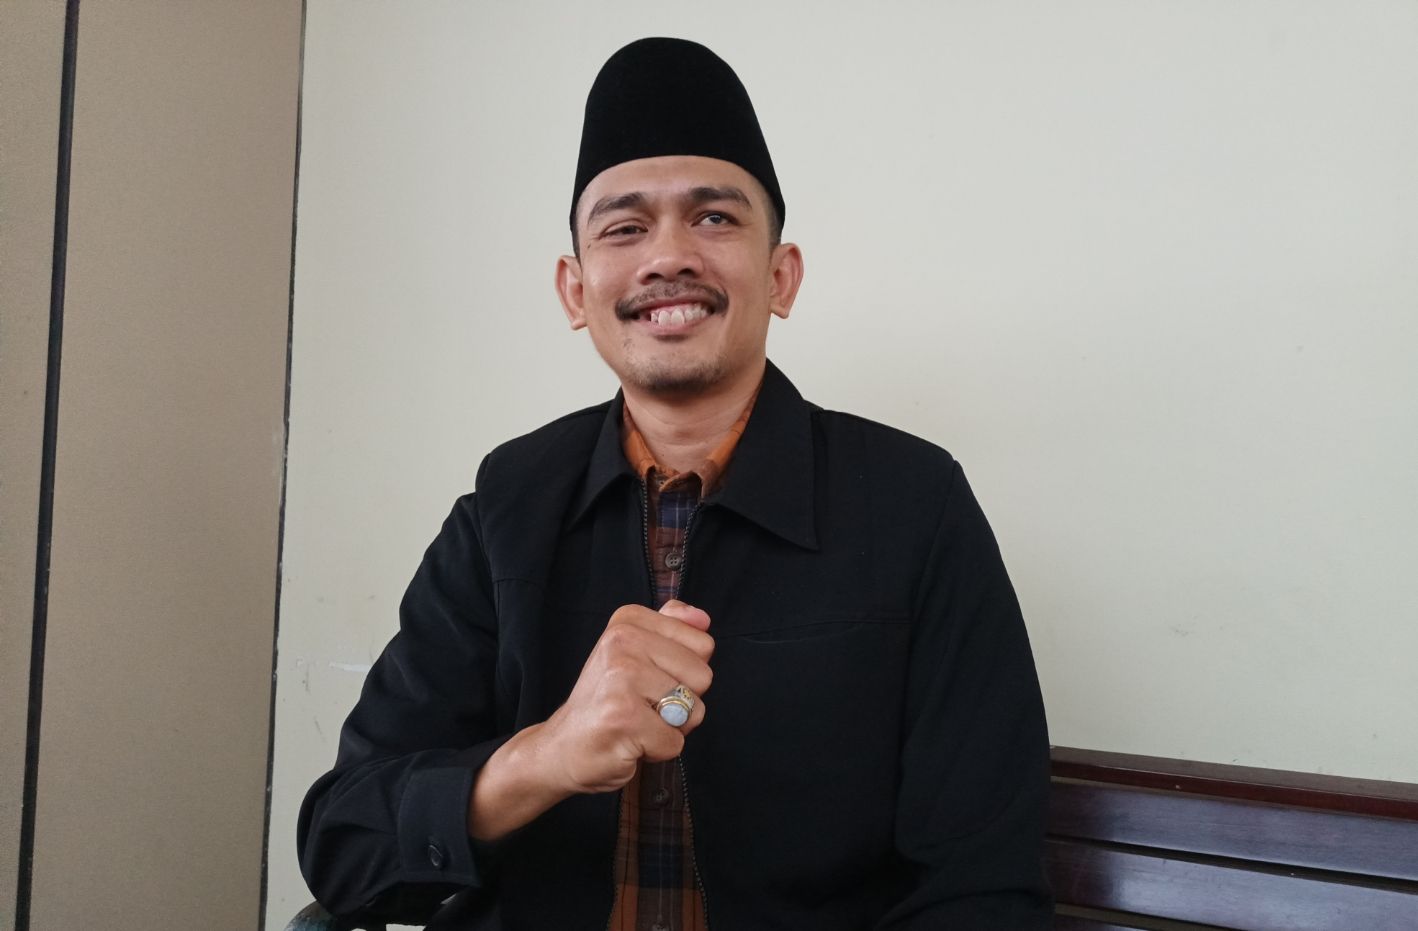 Agung Fajar Bayu Ajie Sekretaris Umum NPCI Jabar merasa optimis bisa meraih juara umum pada event Peparpenas 2023 di Palembang nanti, karena sudah melakukan sentralisasi latihan atlet. 